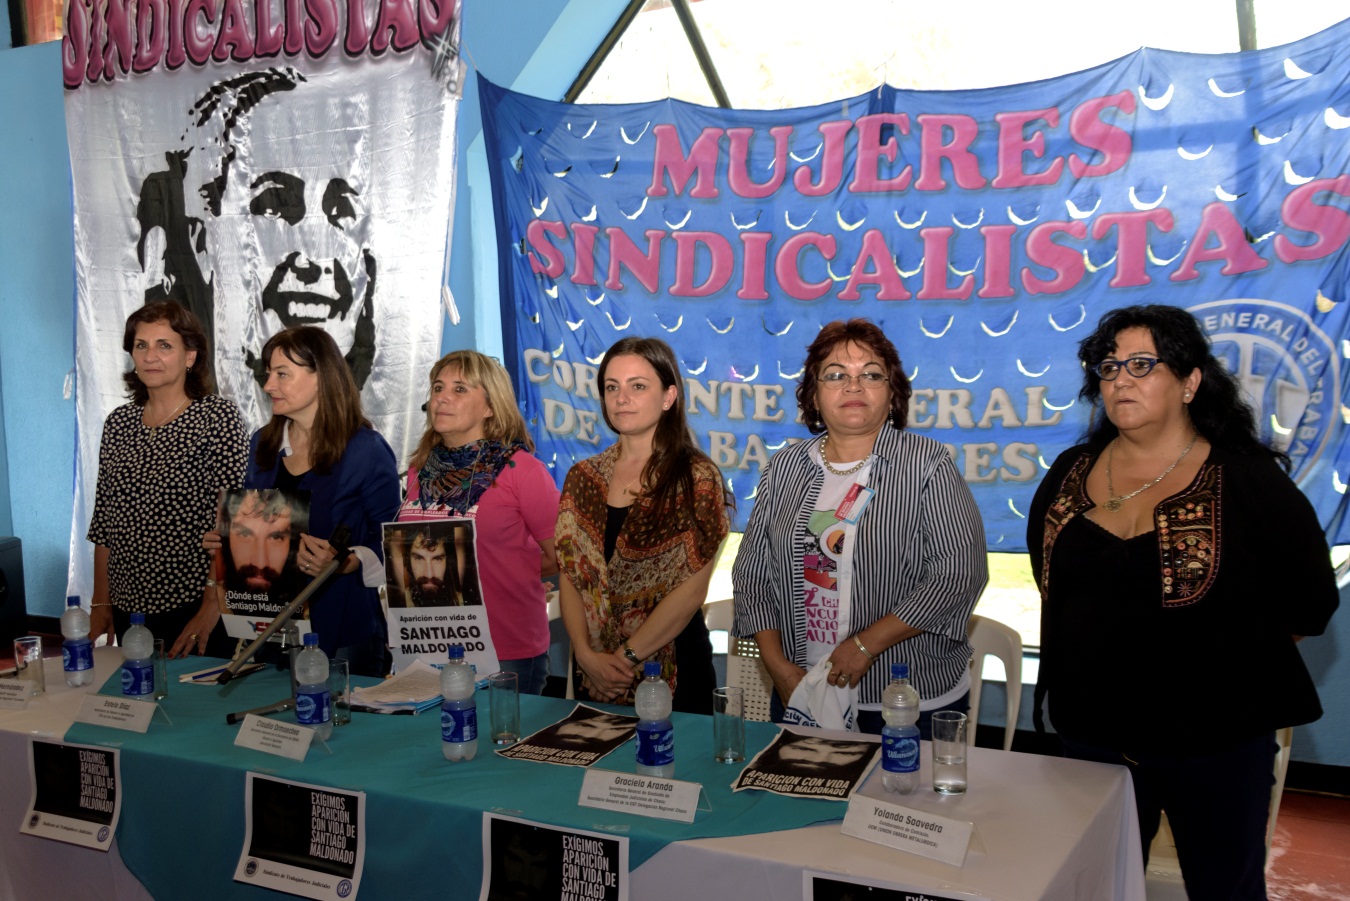 Presentan un cuadernillo sobre la situación de las mujeres en el sindicalismo